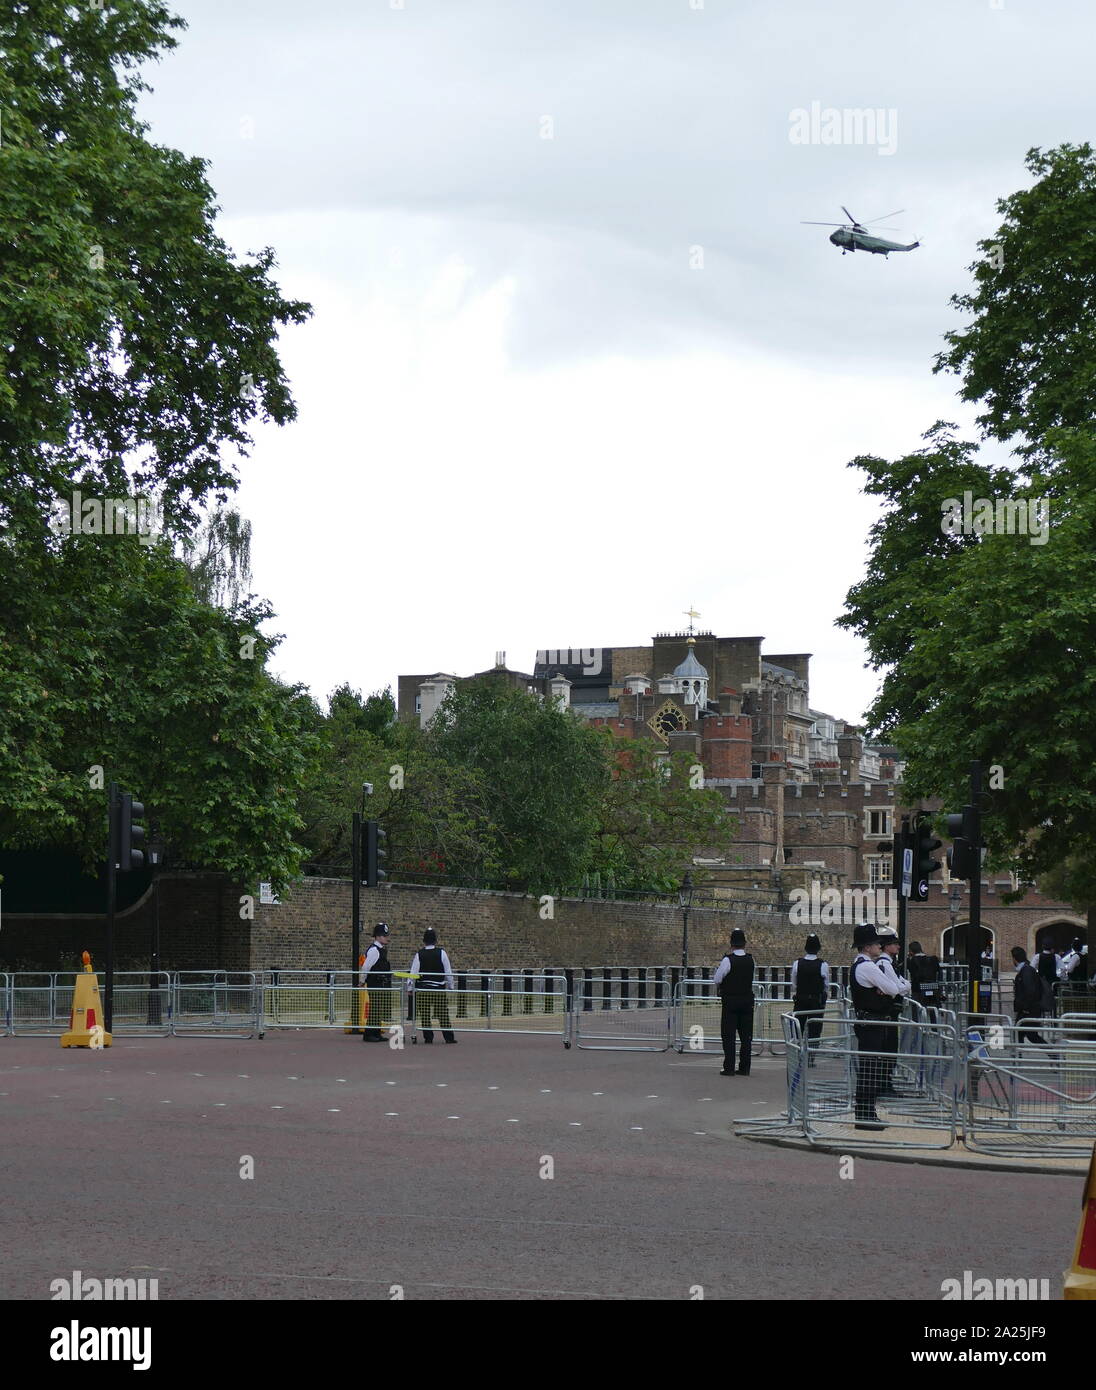 Marine un helicóptero que transportaba al Presidente Trump mosca sobre el Mall en ruta hacia el Palacio de Buckingham, Londres, asegurada por la policía durante la visita de estado del presidente Donald Trump Junio 2019 Foto de stock